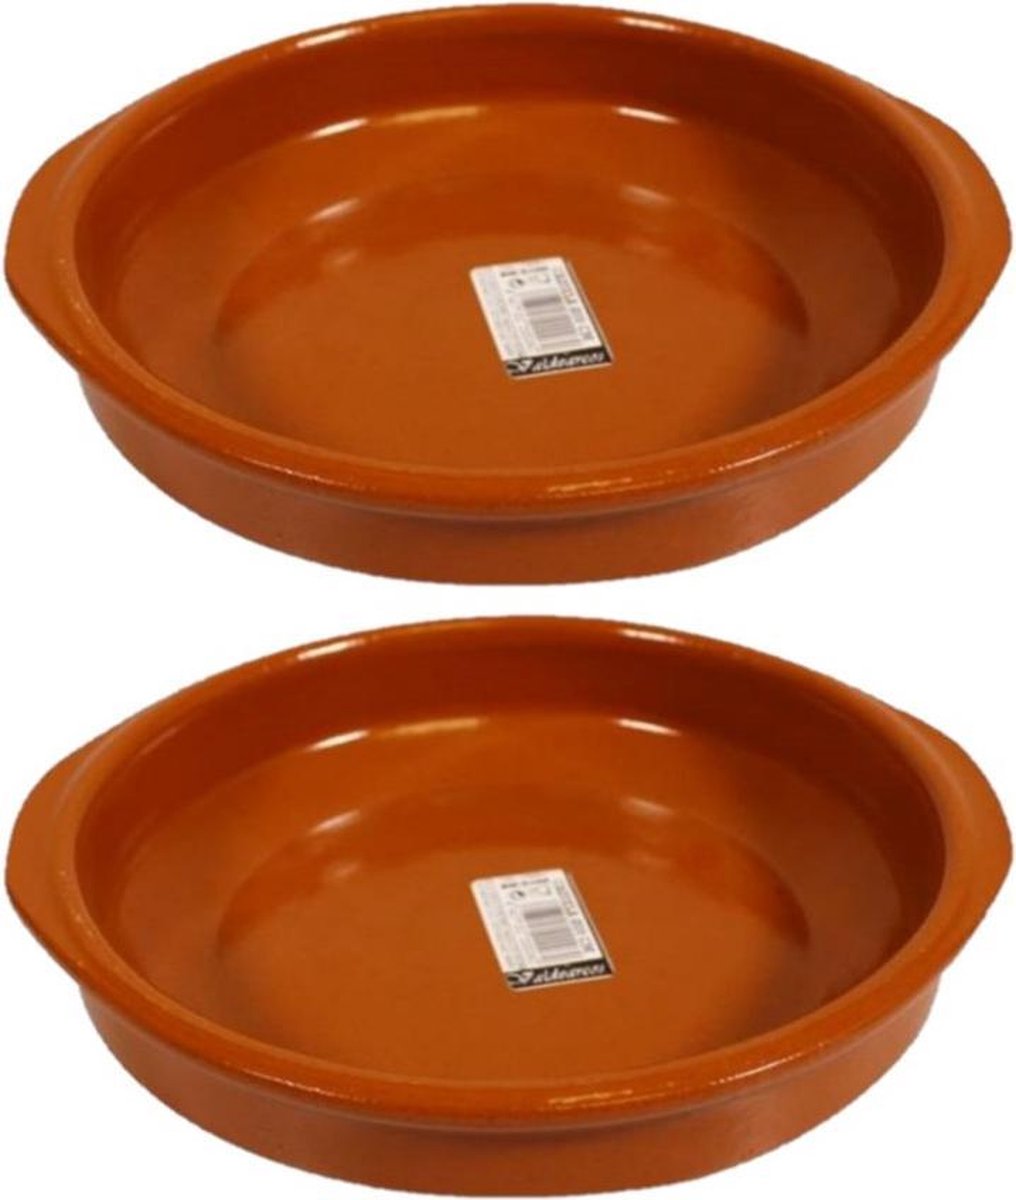 Set van 3x stuks tapas borden/schalen Alicante met handvatten 20 cm - Tapas serveerschalen/borden/ovenschalen